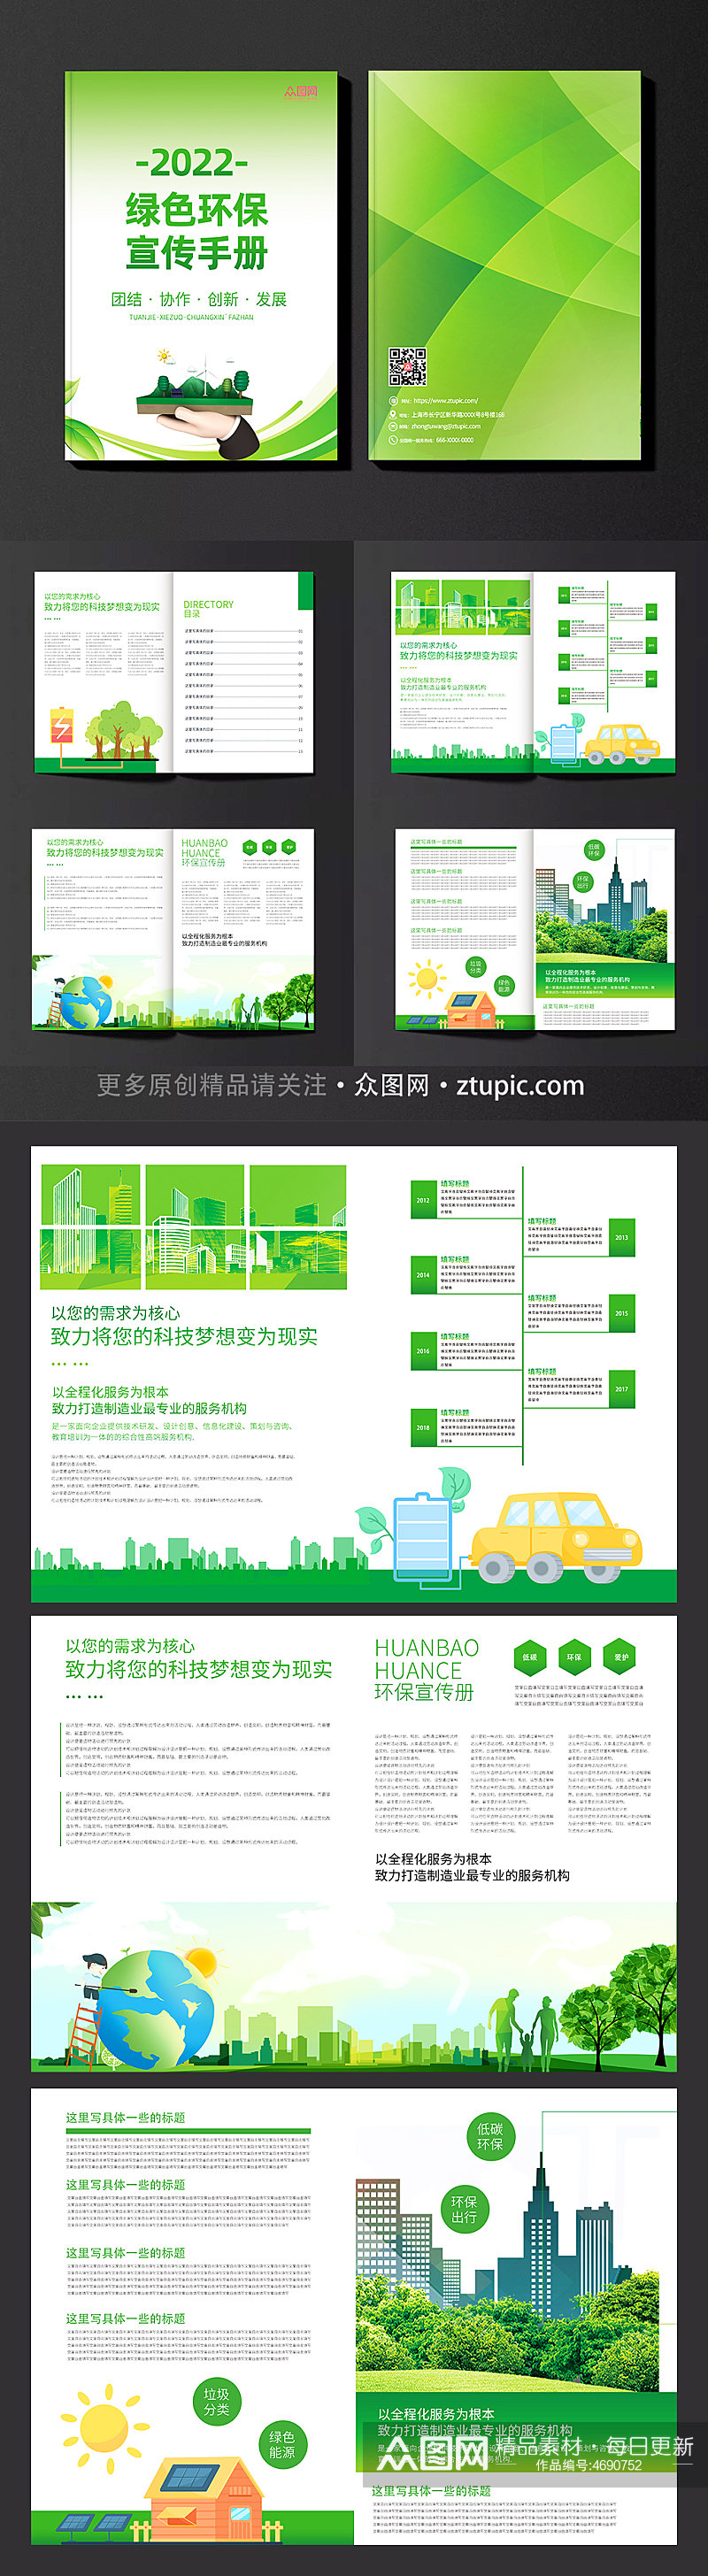 绿色环保画册宣传设计模板素材